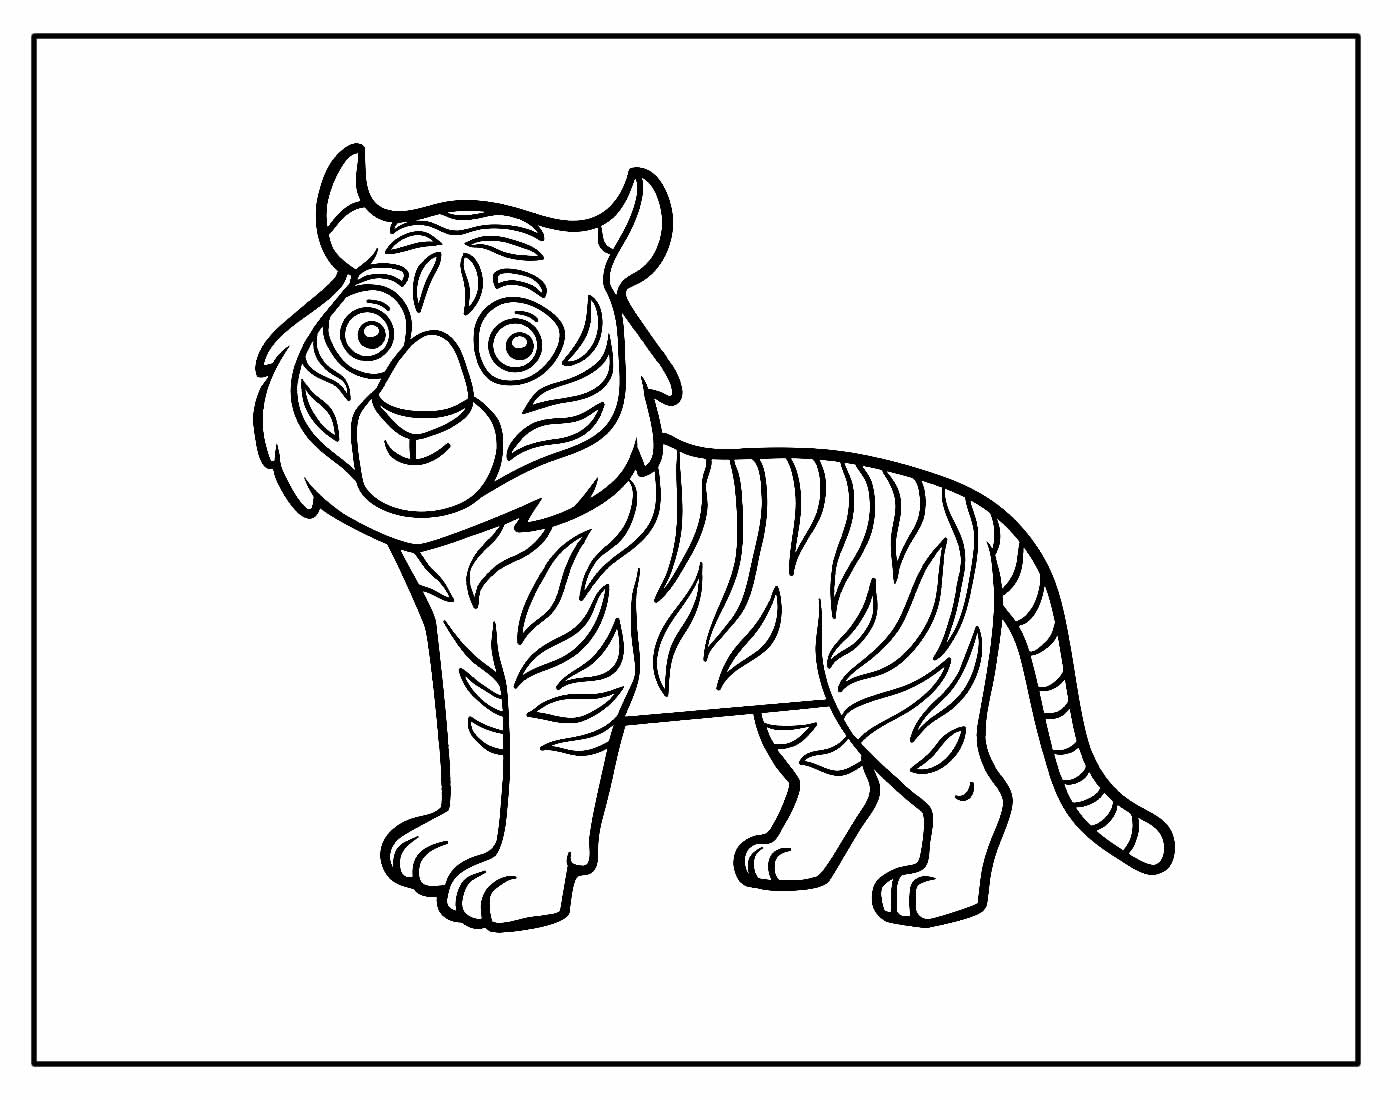 Desenho para colorir de Tigre fofo